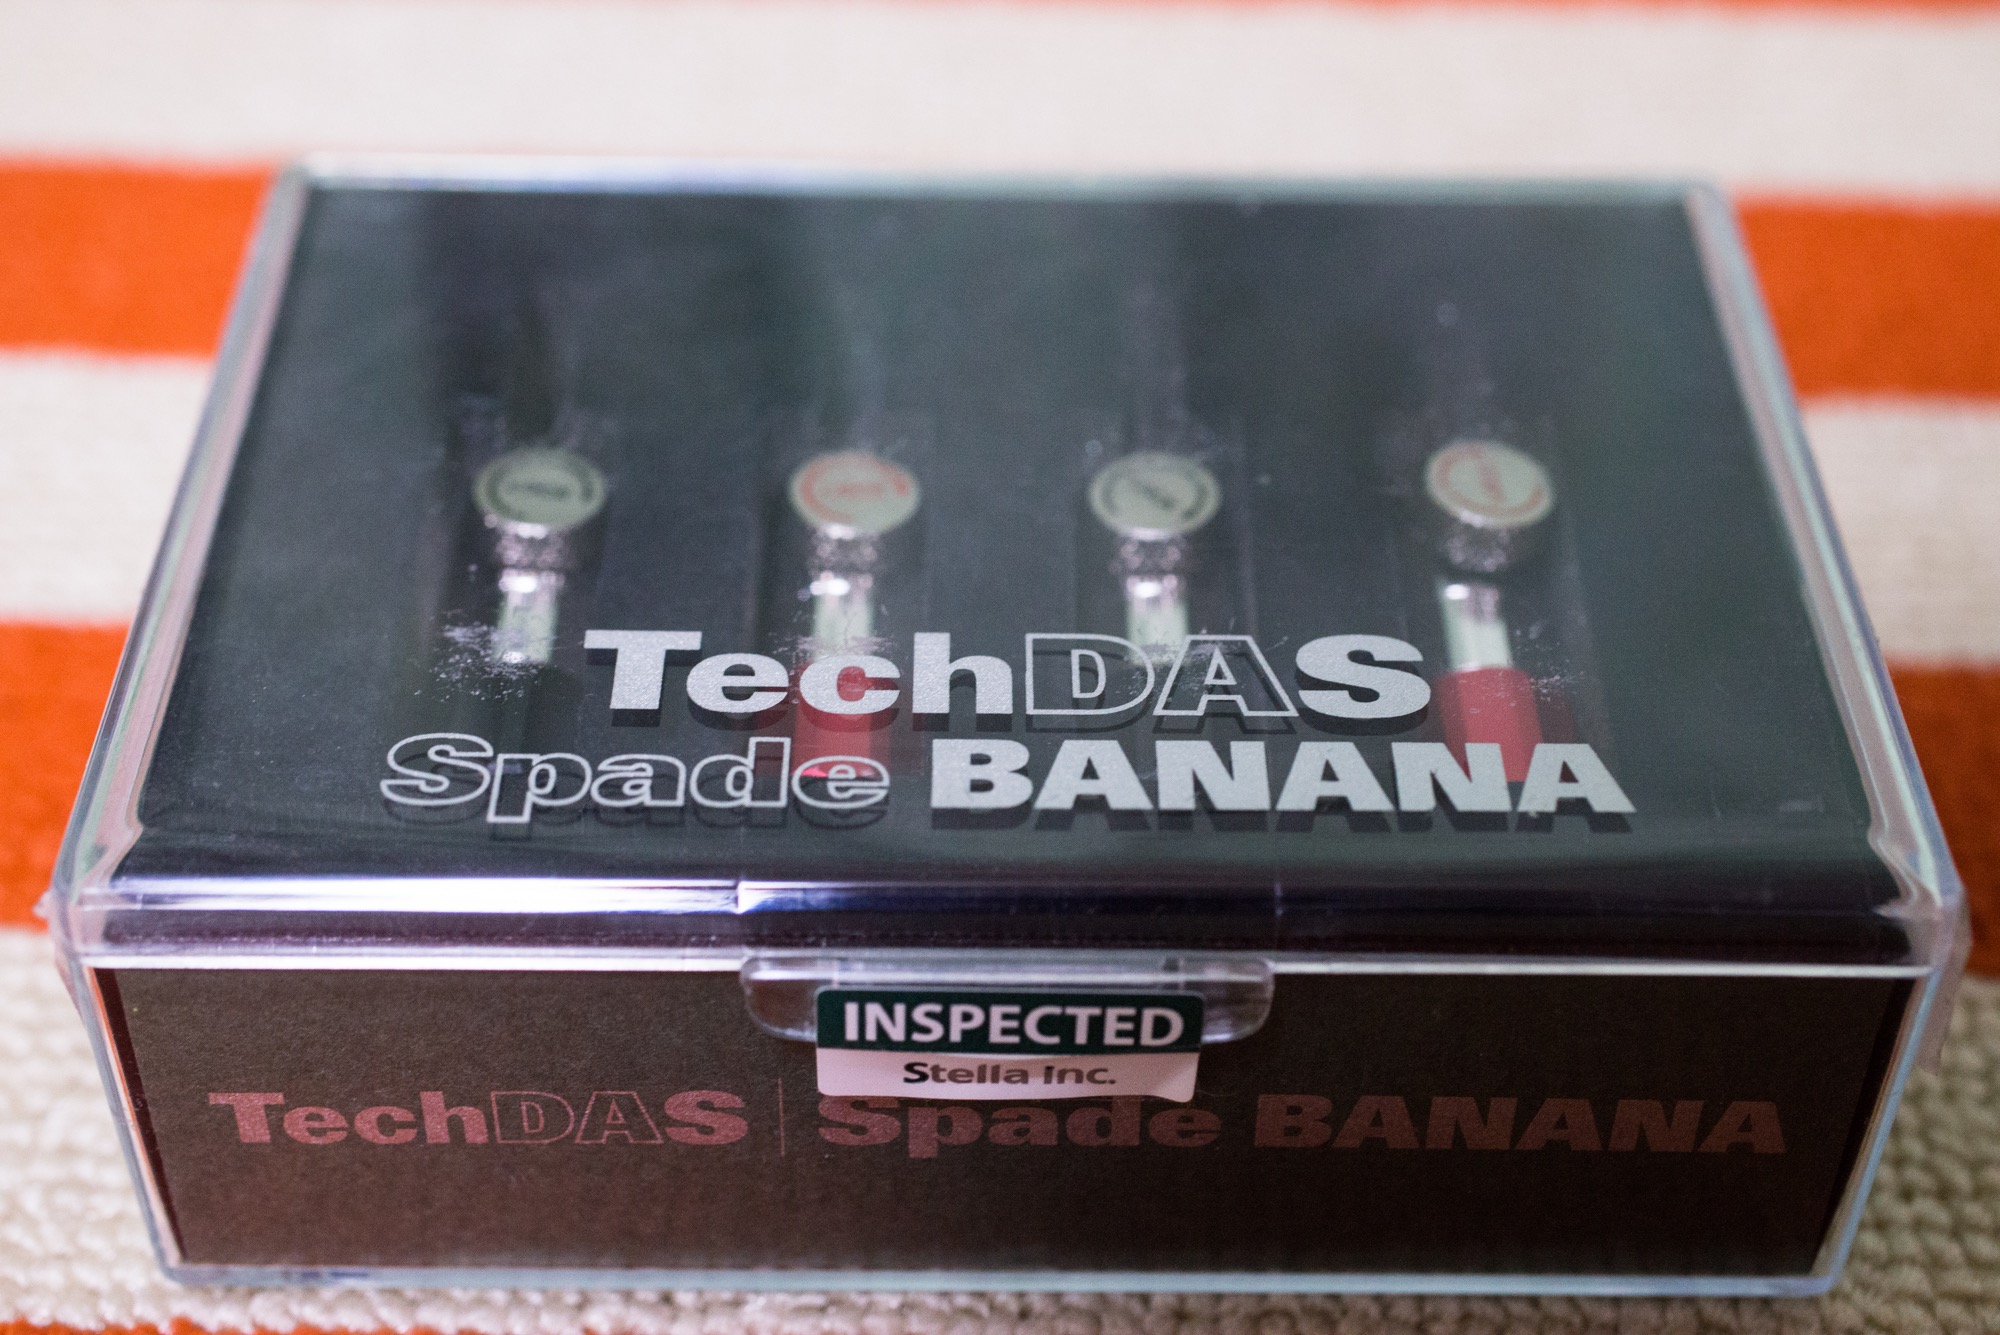 TechDAS Spade BANANA | MacBSの日常生活的日記